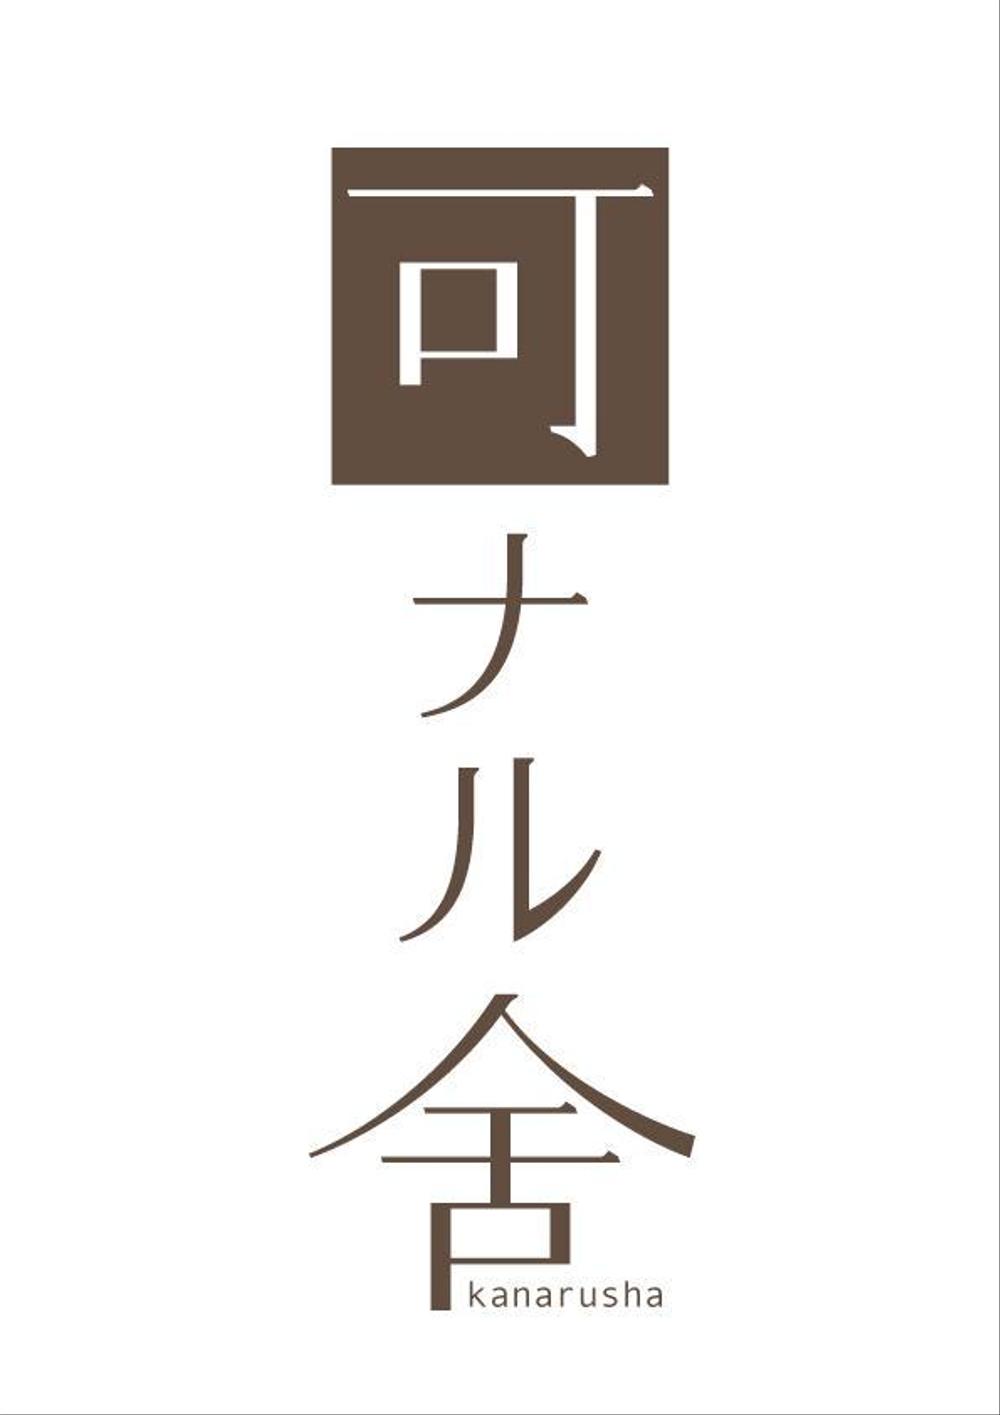 アンティークショップのロゴ(看板、名刺、業務用用紙など会社のブランディングに使用)